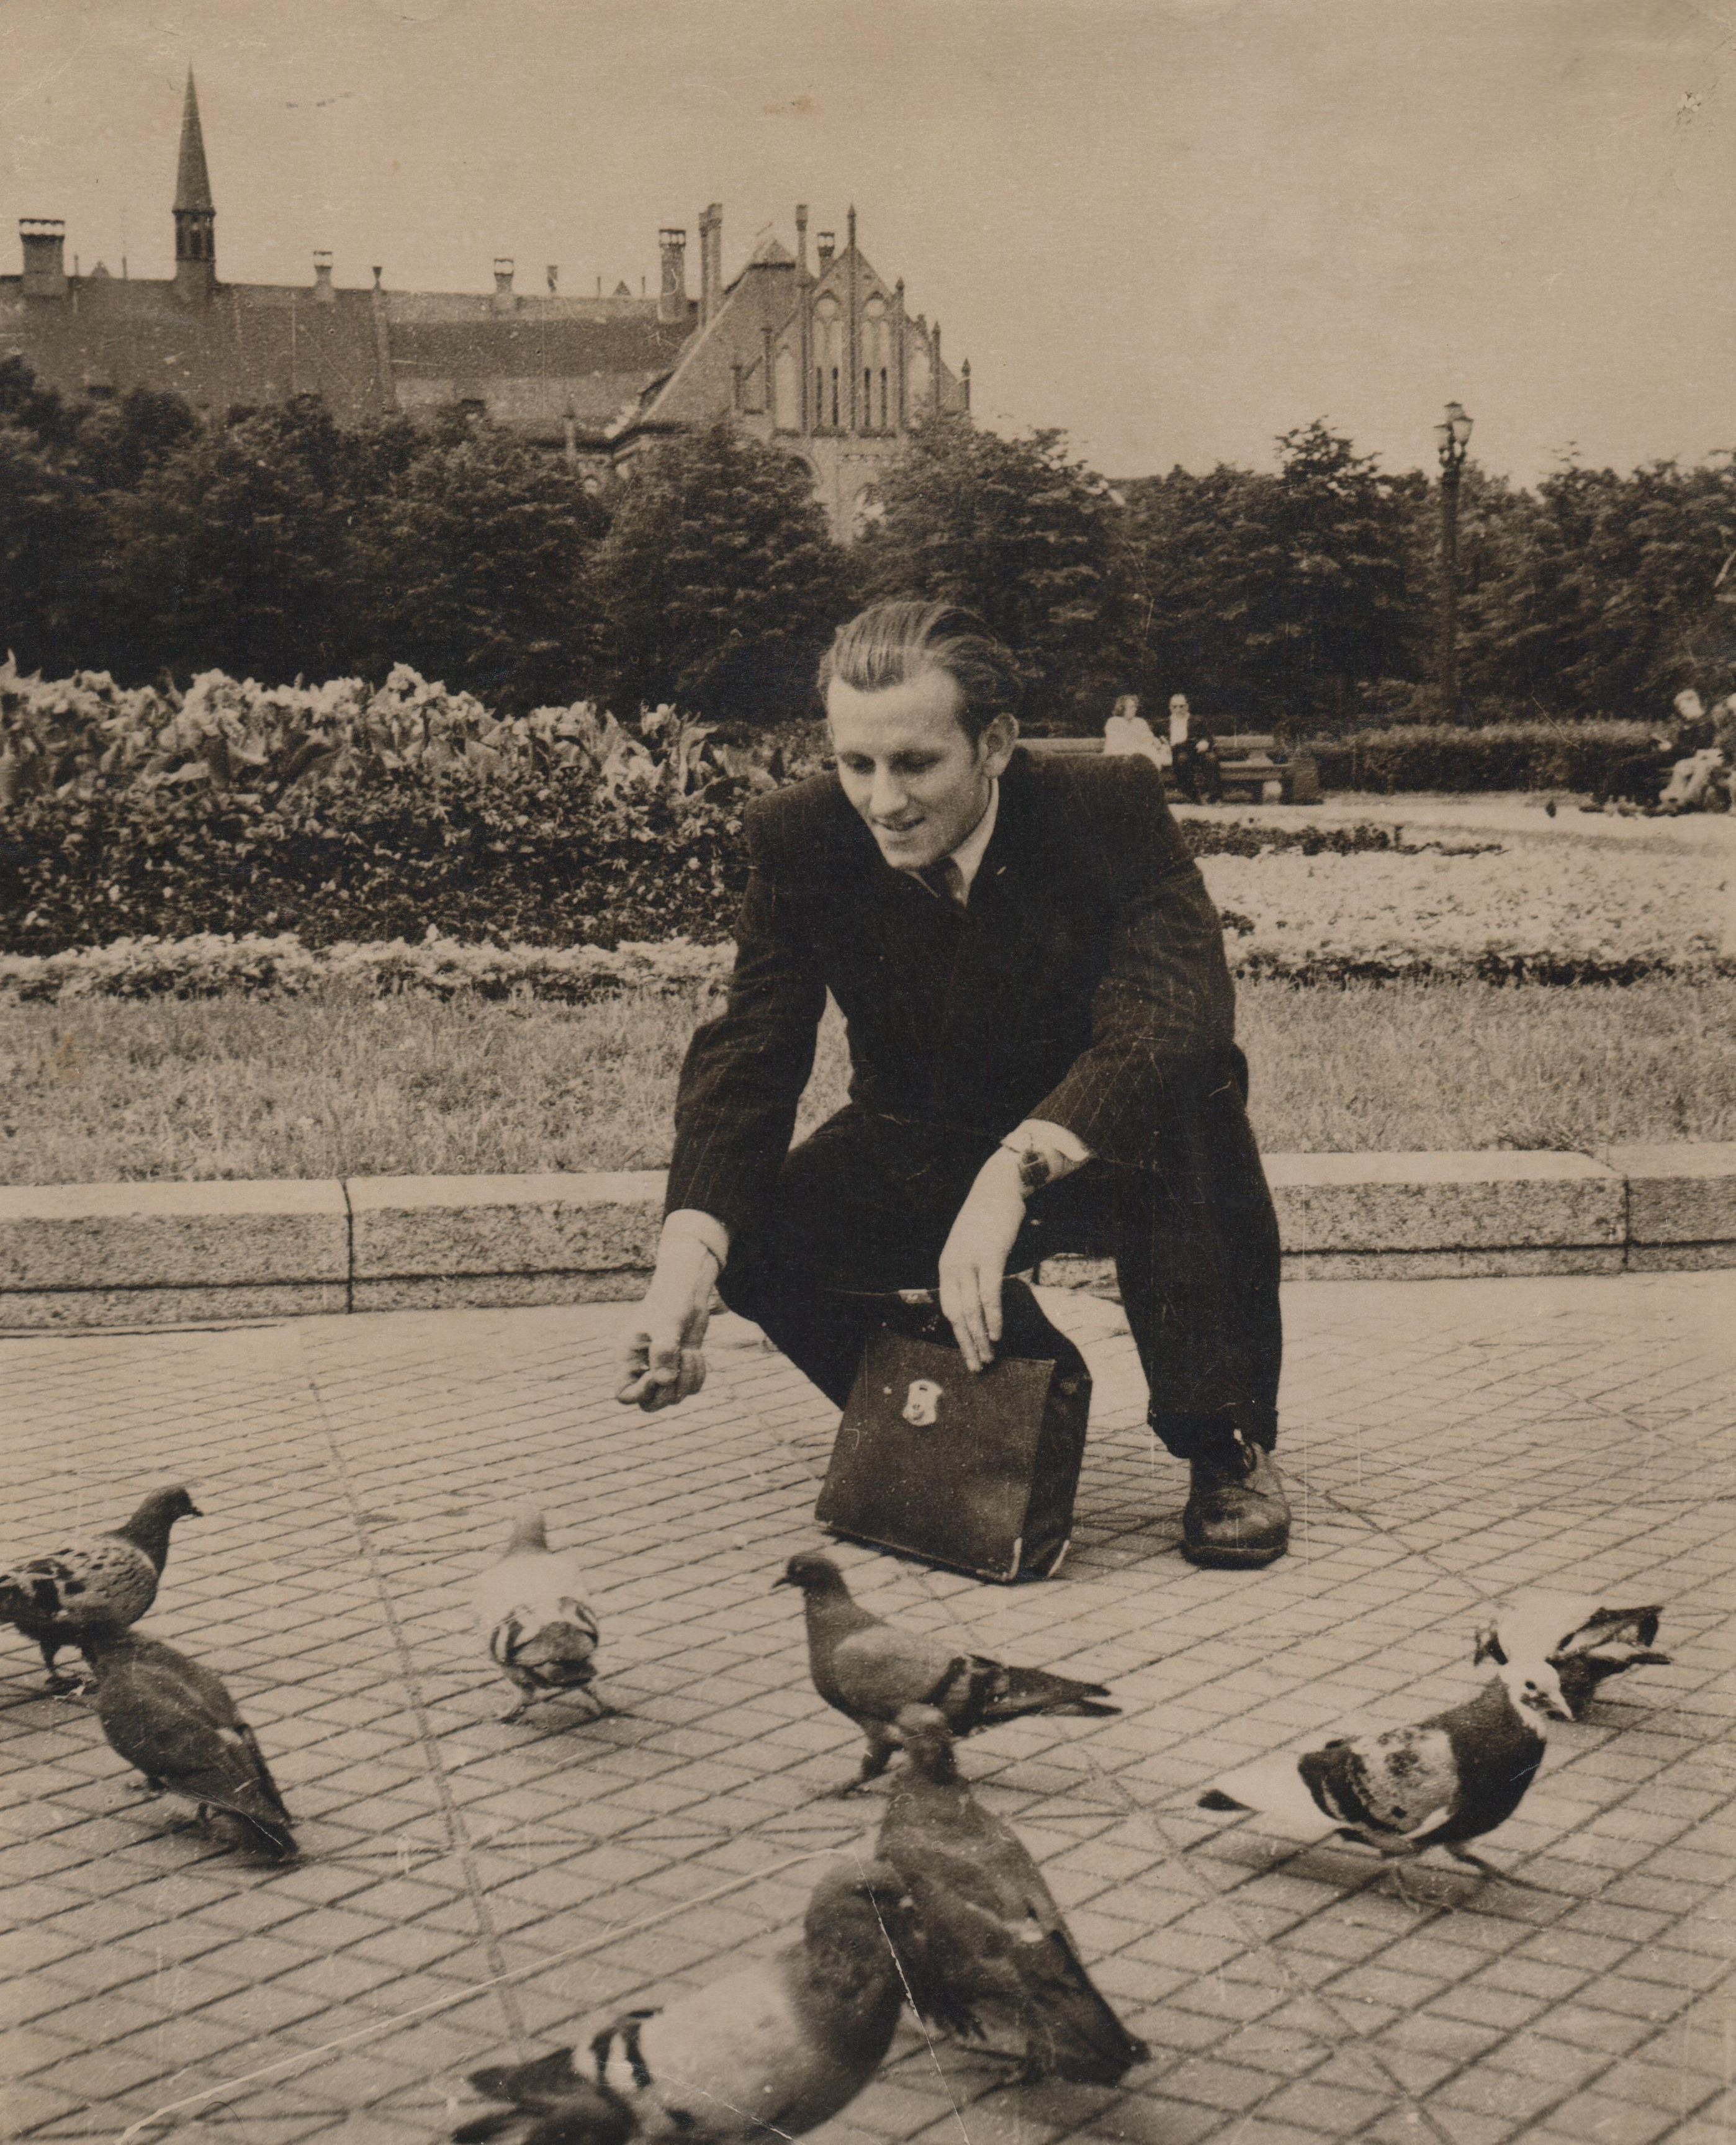 Pirmoji išvyka su fotoaparatu į užsienį. Balandžių maitinimas Rygos aikštėje. 1958 m. rugpjūtis.